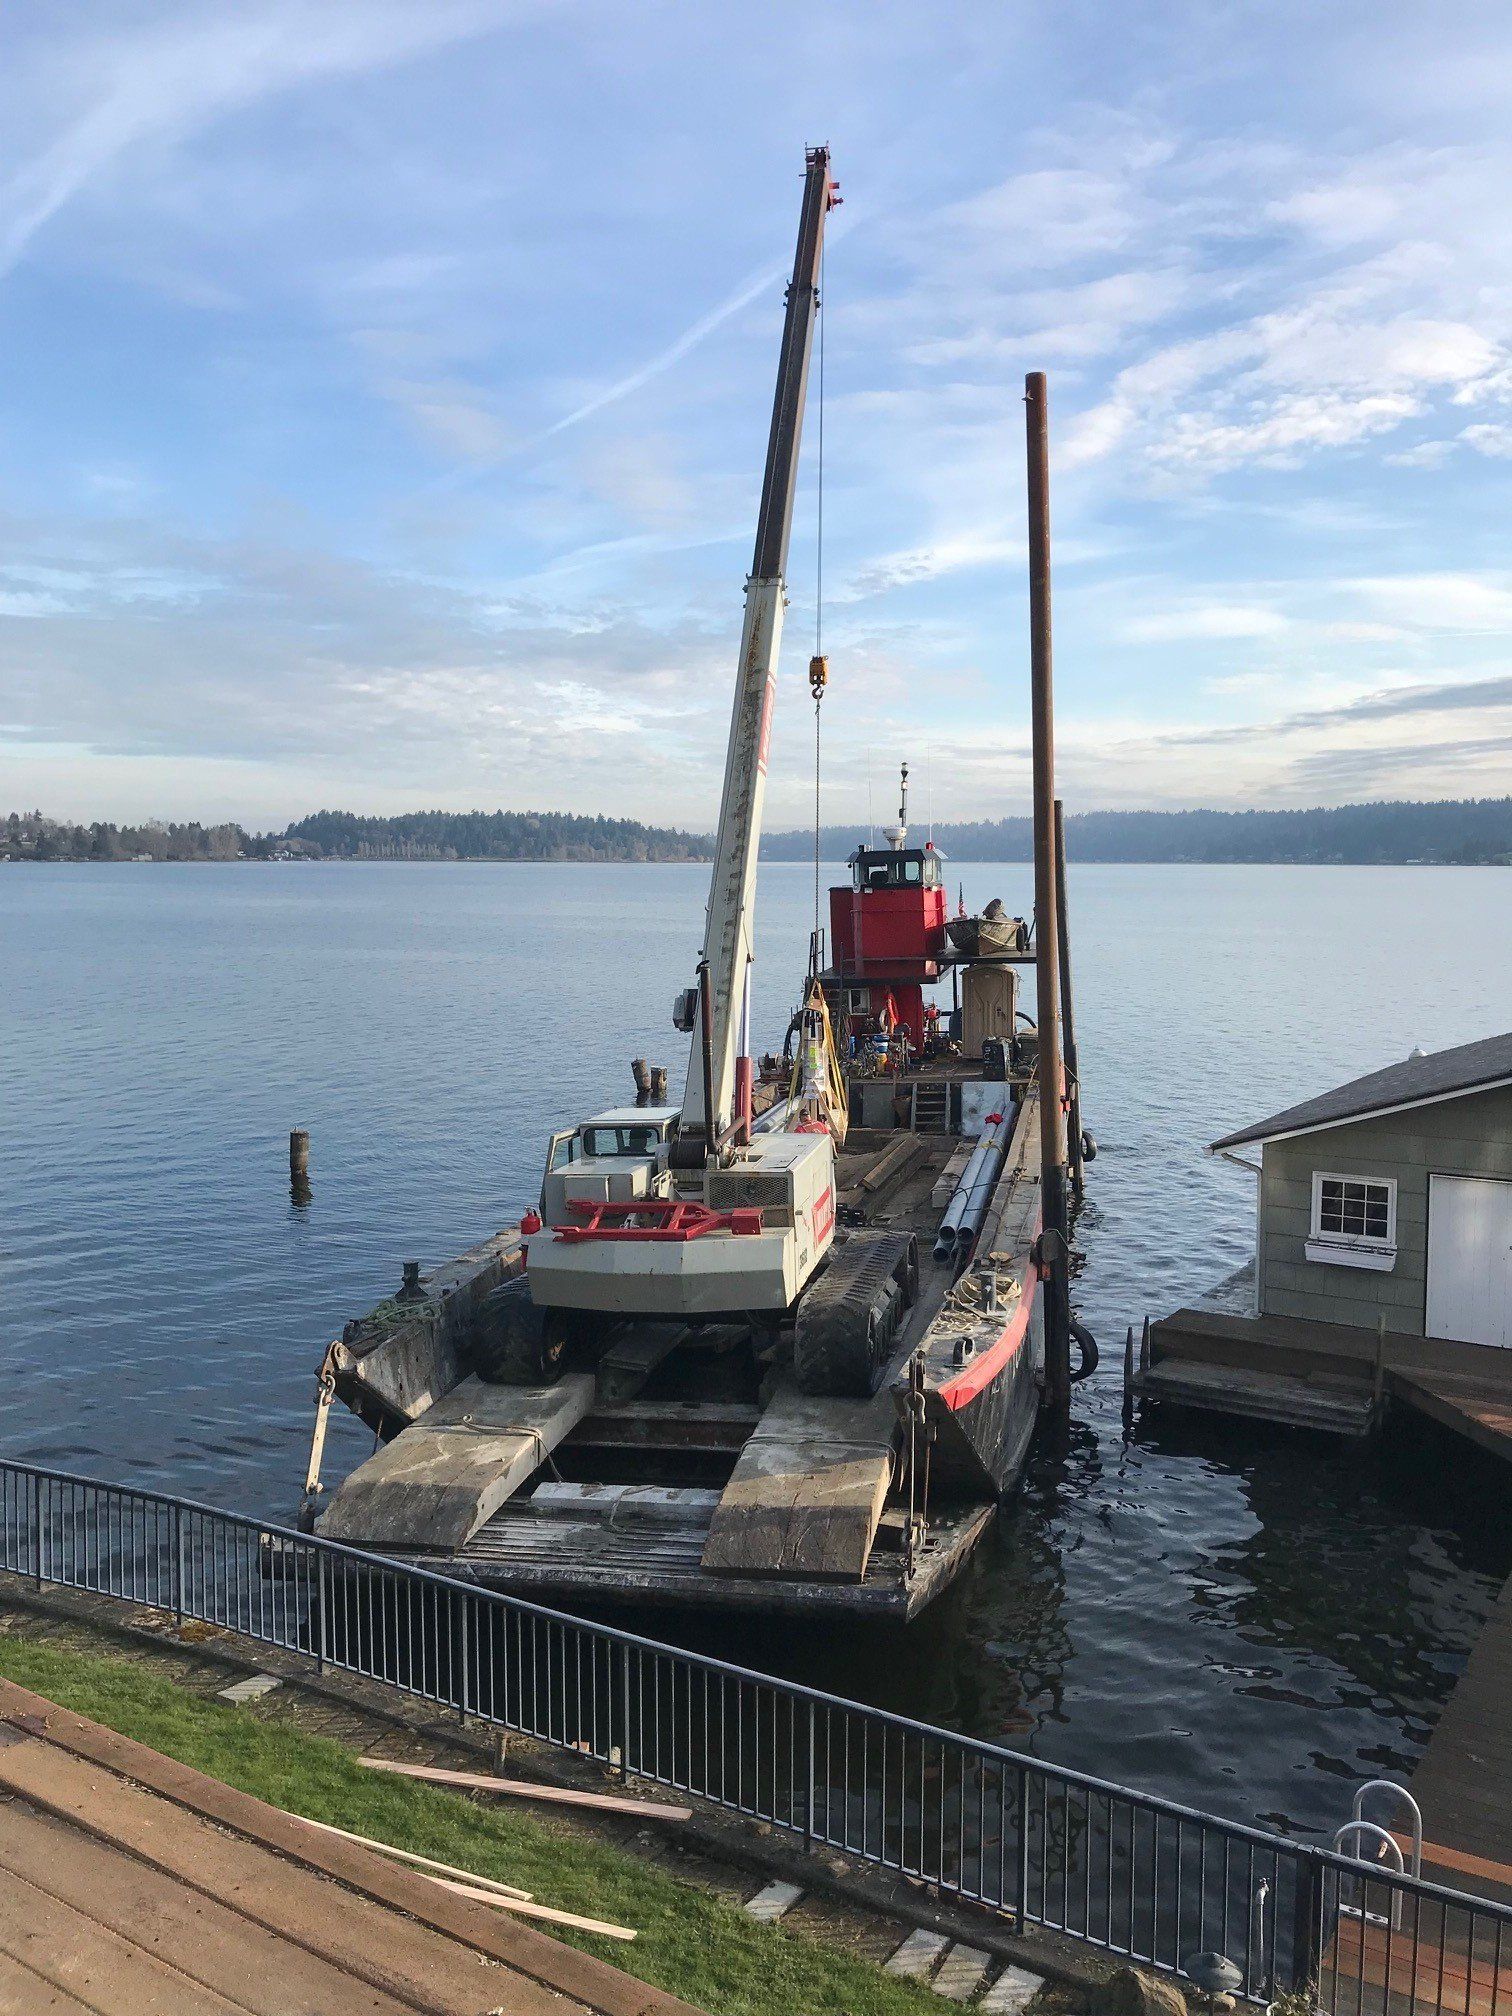 Crane on barge in Lake Washington